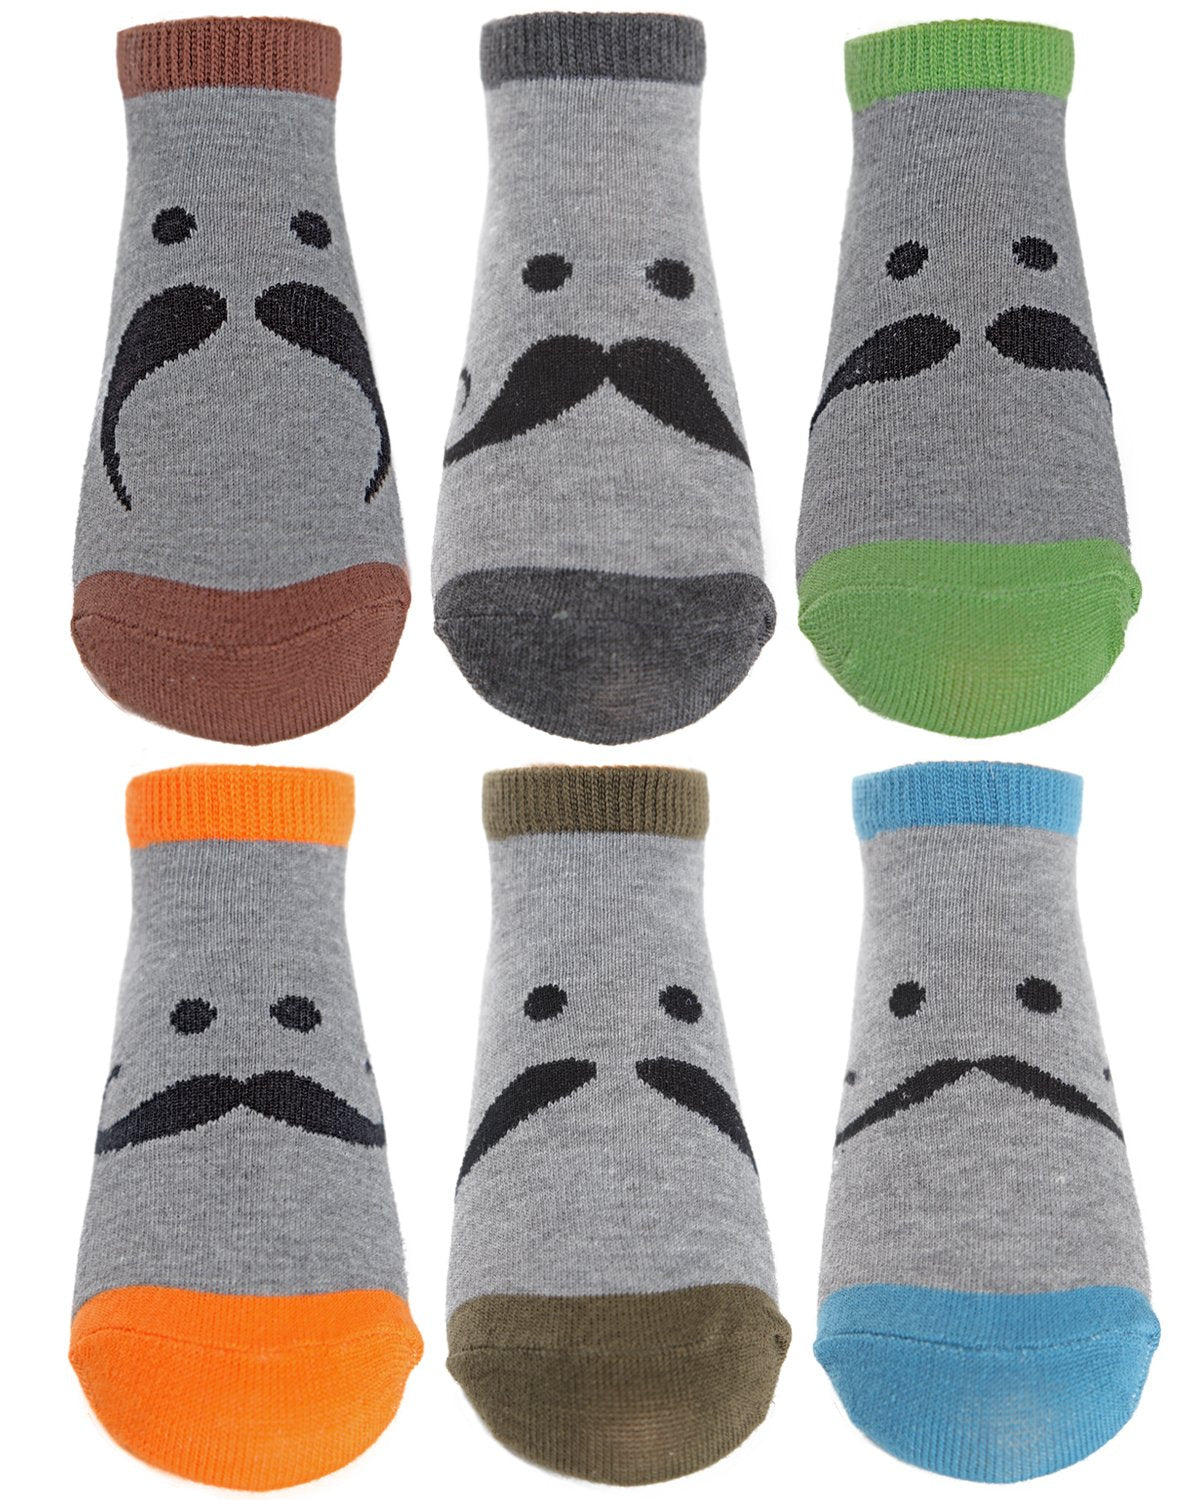 Mustache Mood Lowcut Socks Six-Pack